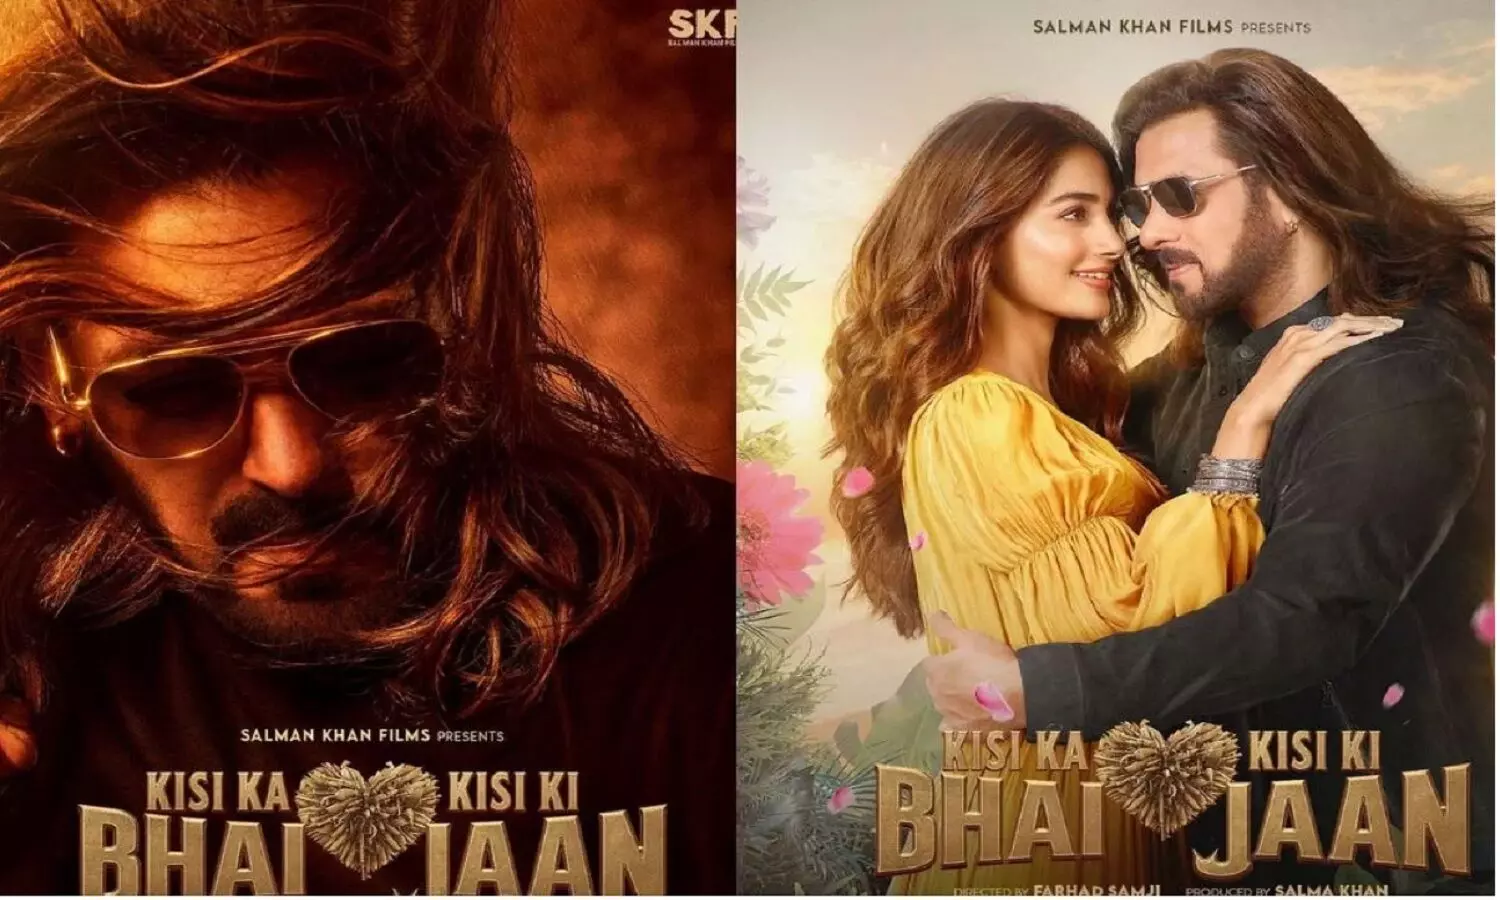 Kisi Ka Bhai Kisi Ki Jaan Review: किसी का भाई किसी की जान रिव्यू पढ़कर ही सलमान खान की पिक्चर देखें